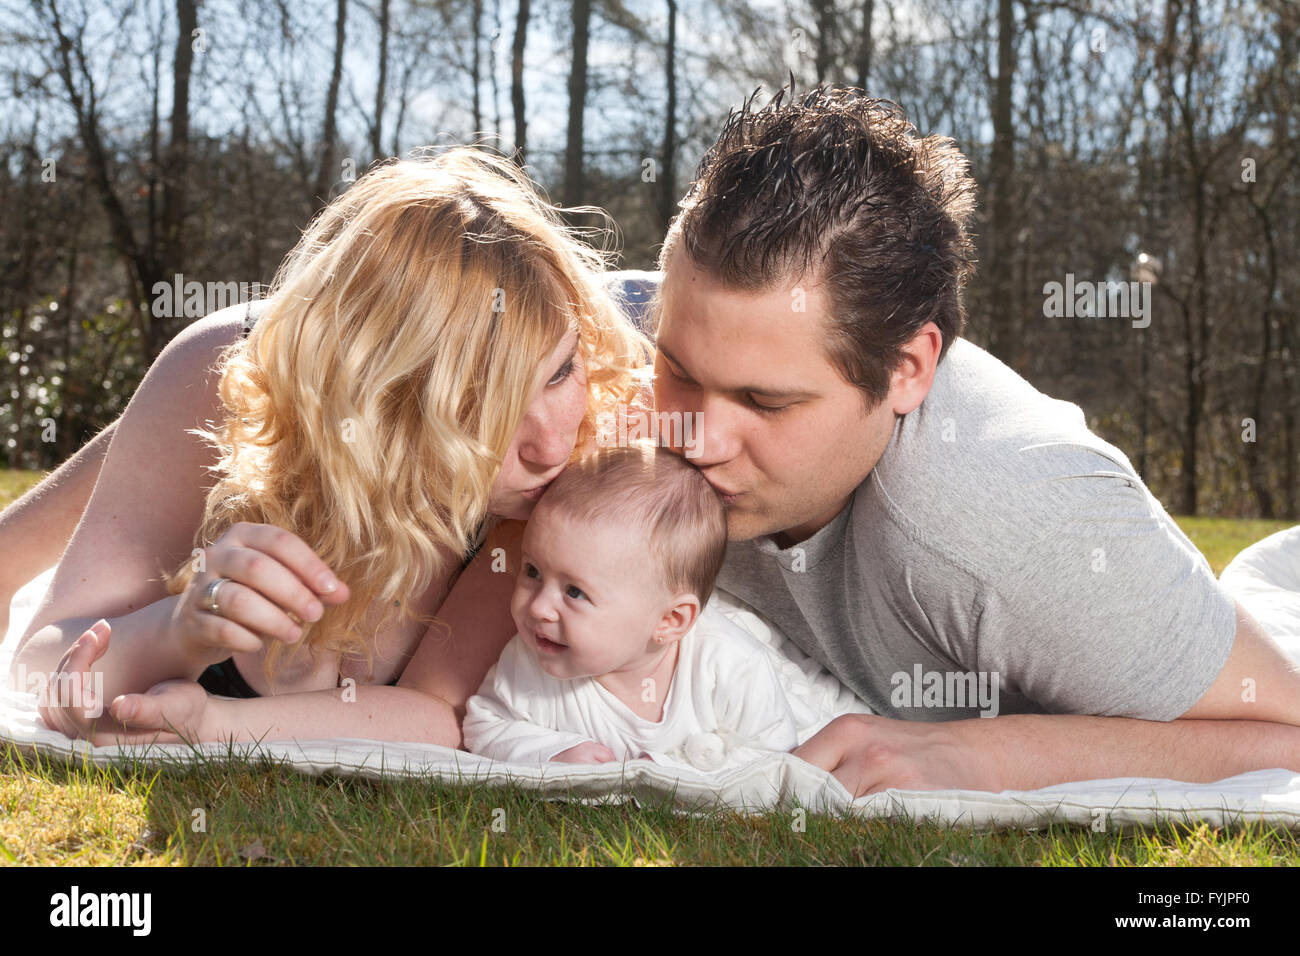 Les jeunes parents s'embrassent le bébé Banque D'Images